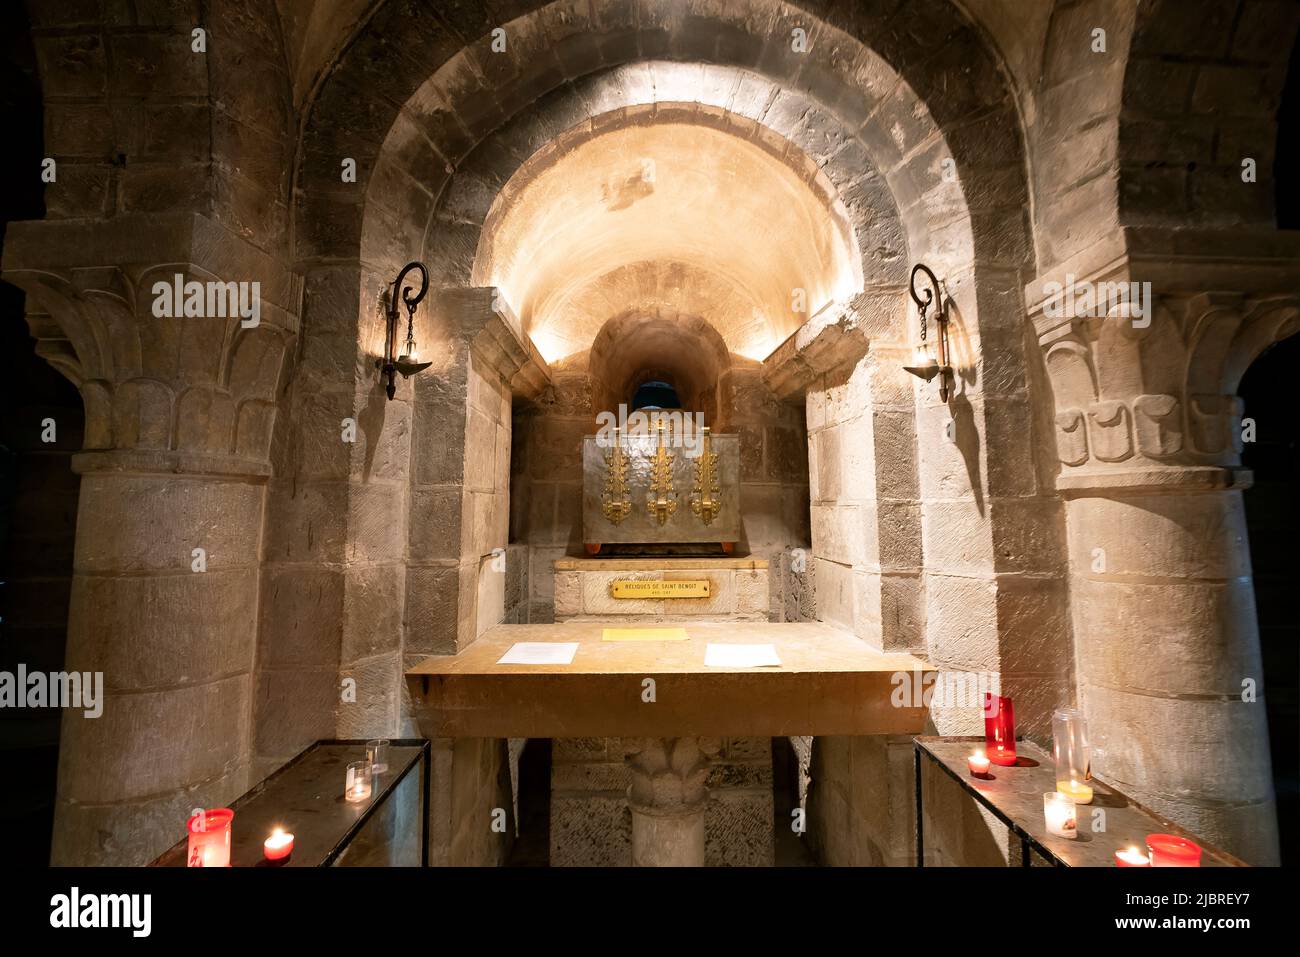 Das Heiligtum und die Krypta. Dieses im Jahr 1108 geweihte, leuchtende Heiligtum dient als kostbarer Fall für die Reliquie. Loiret Abteilung in Nord-Zentral Fr. Stockfoto